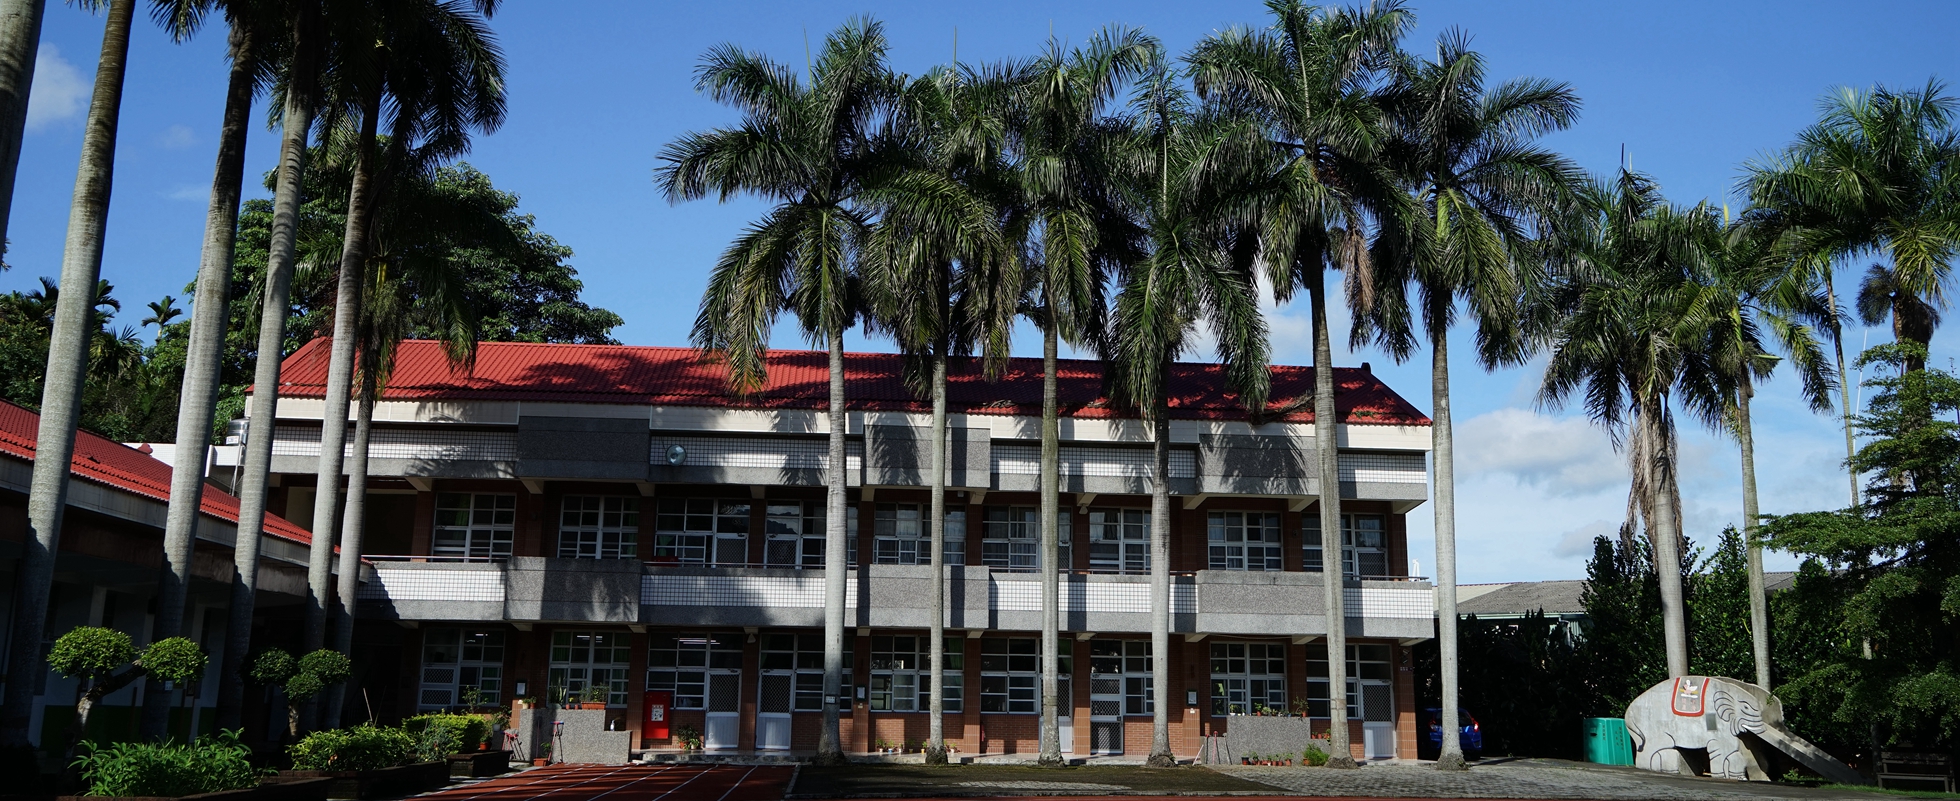 學校西邊大樓。為二層樓建築，上覆紅色屋瓦，前有一排大王椰子樹